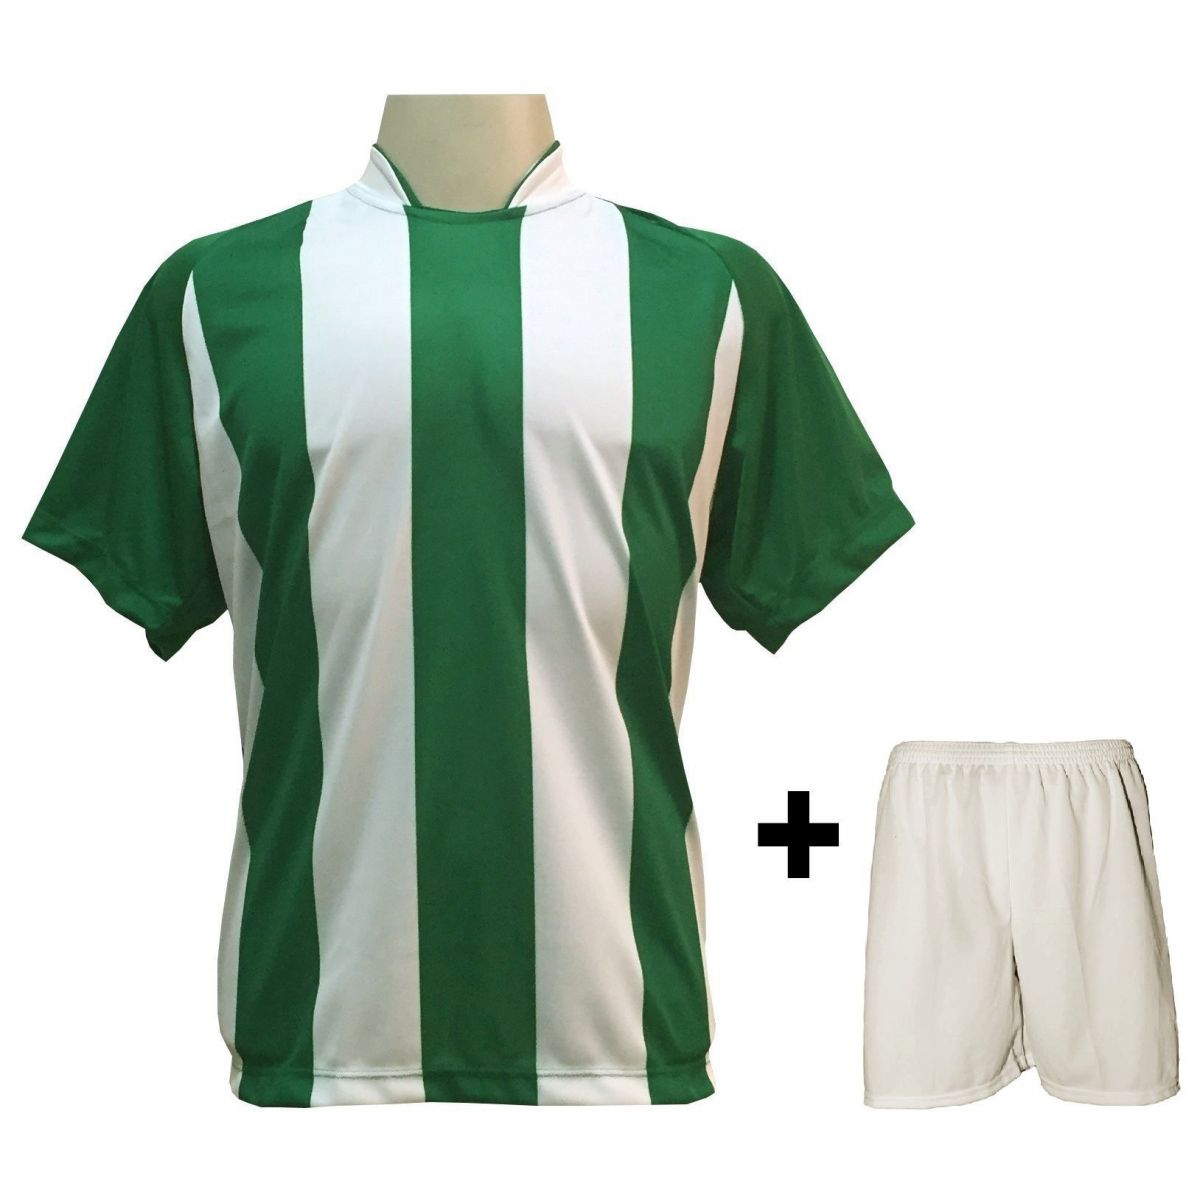 Uniforme Esportivo com 20 camisas modelo Milan Verde/Branco + 20 calções modelo Madrid + 1 Goleiro + Brindes